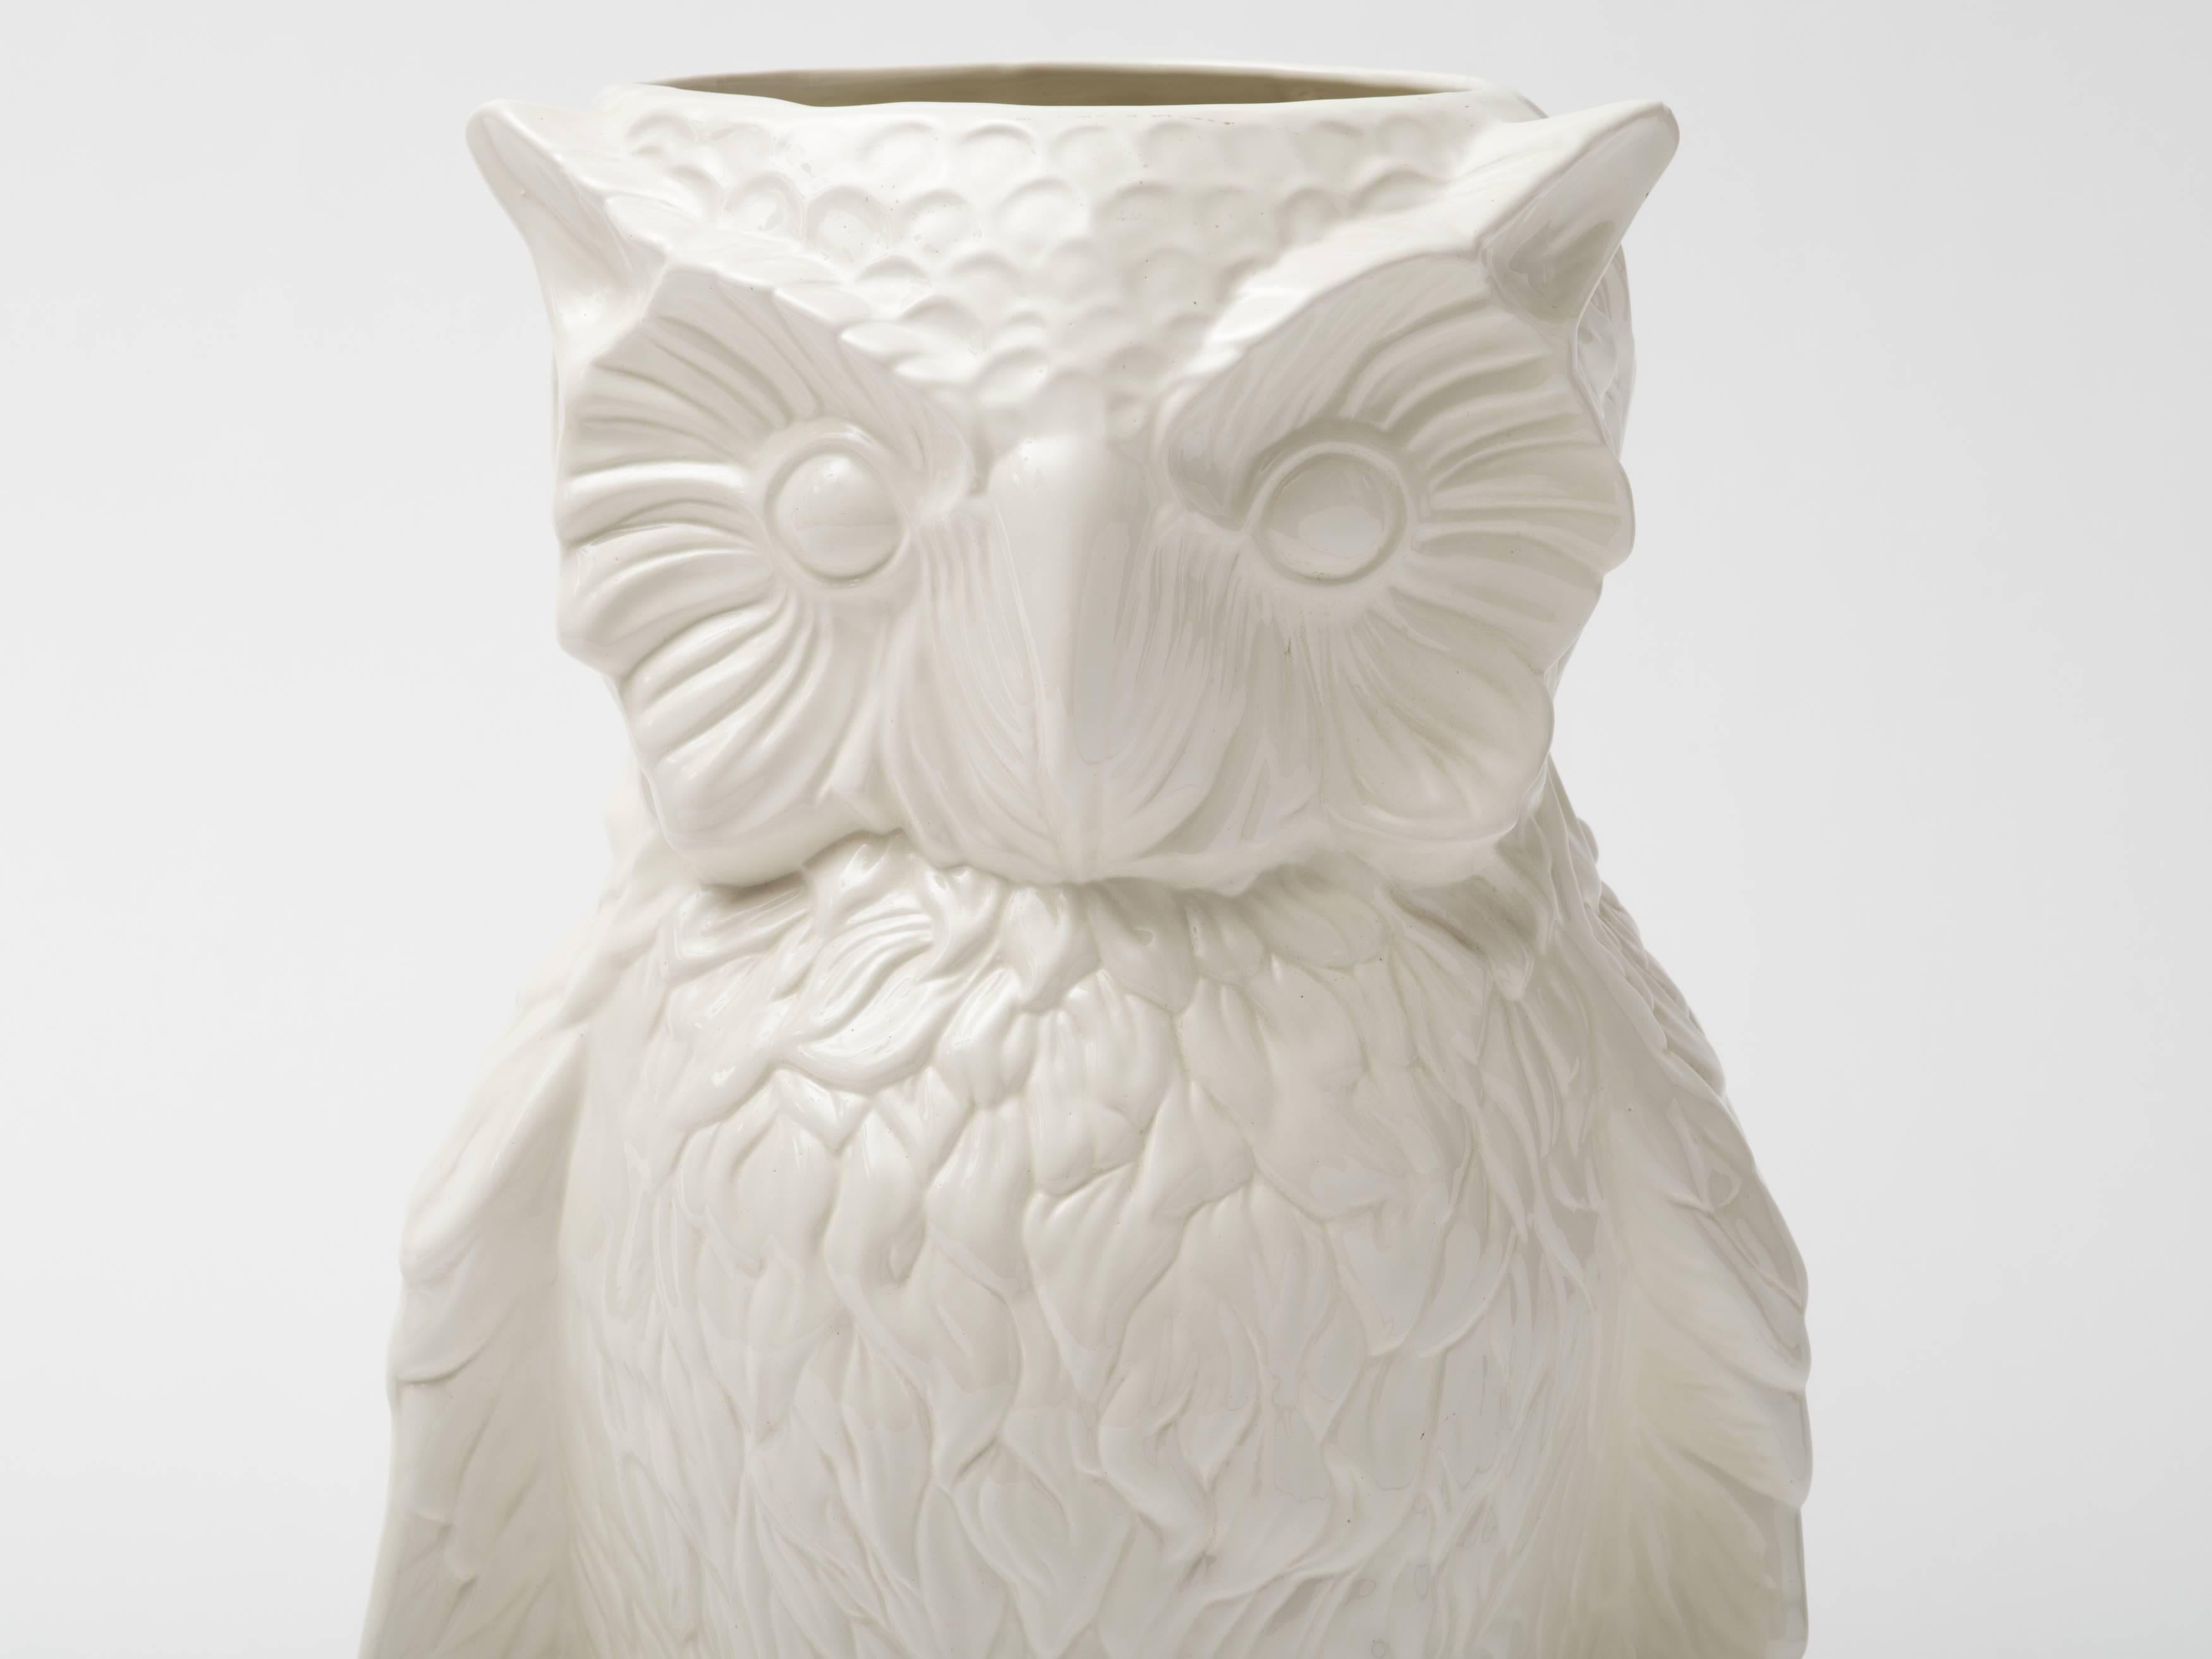 Large blanc de chine ceramic owl umbrella stand or floor vase sculpture,
Italy, circa 1960s.